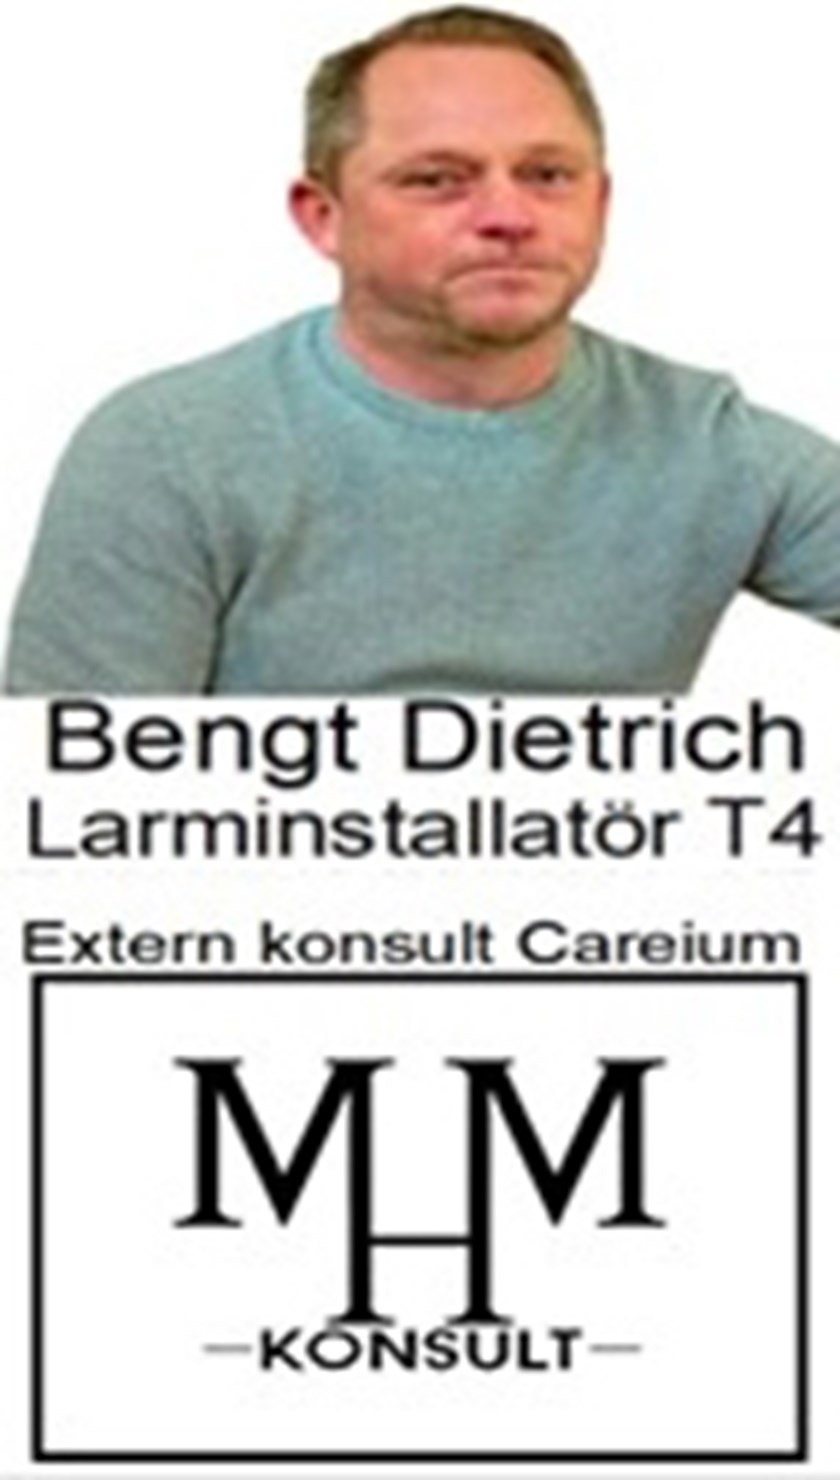 Bengt Dietrich, Larminstallatör T4.